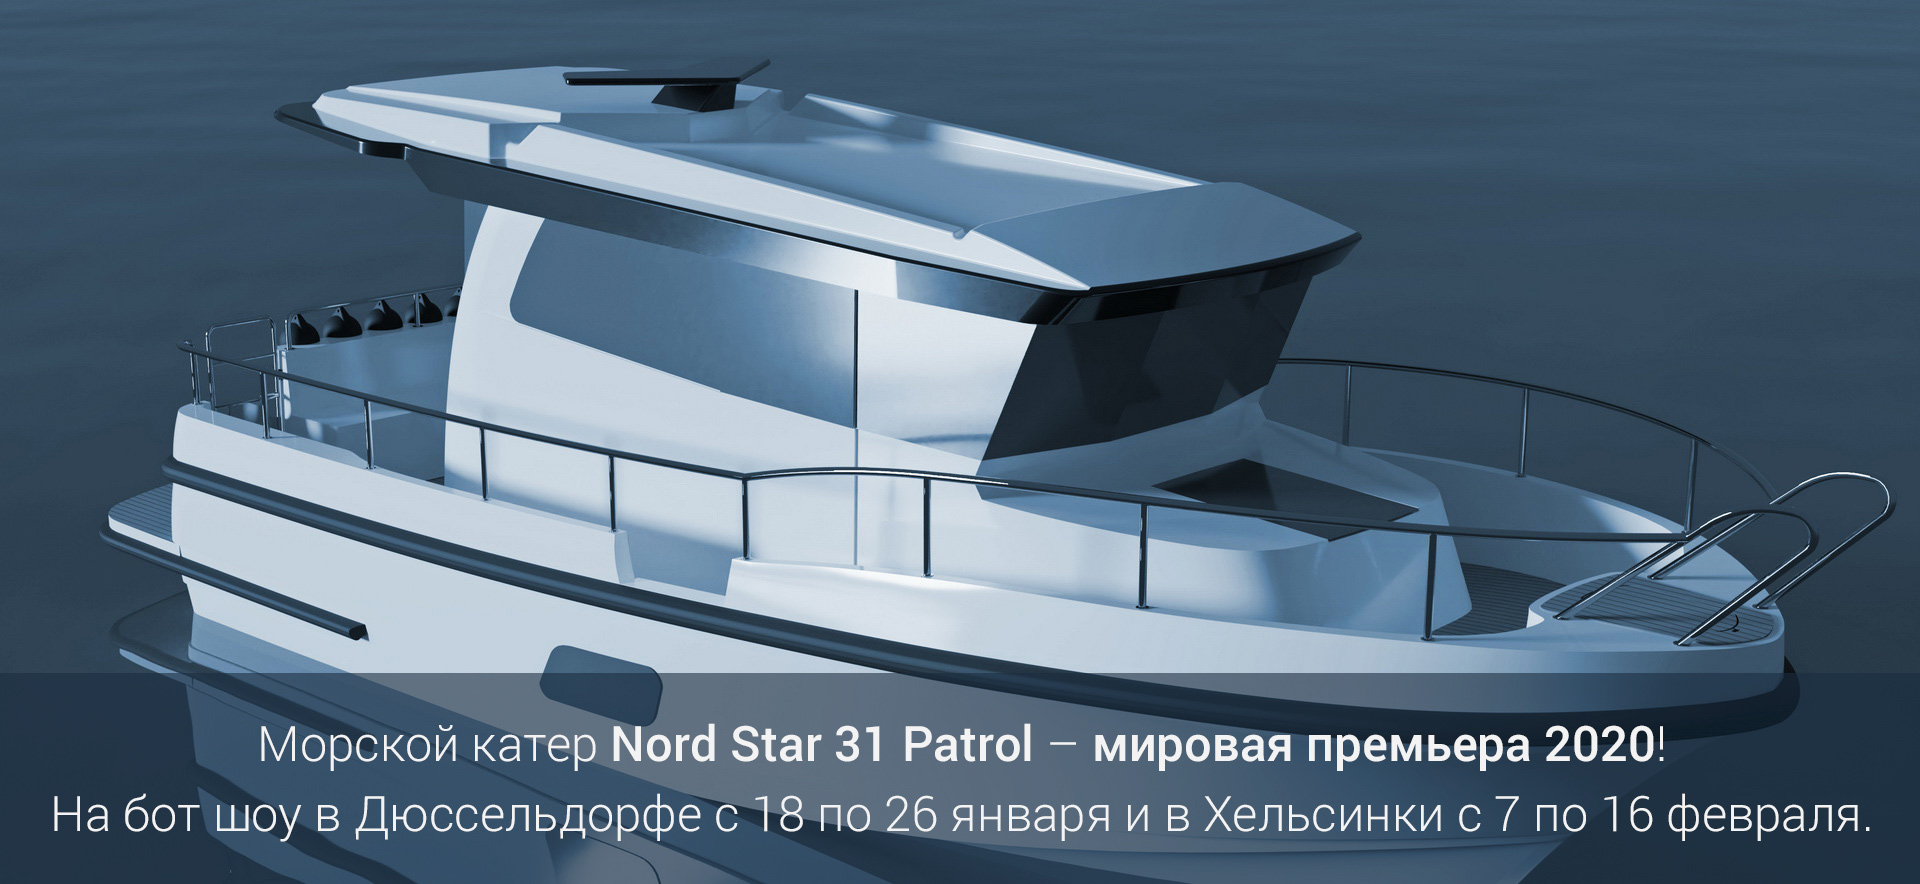 Морской катер Nord Star 31 Patrol – мировая премьера 2020!